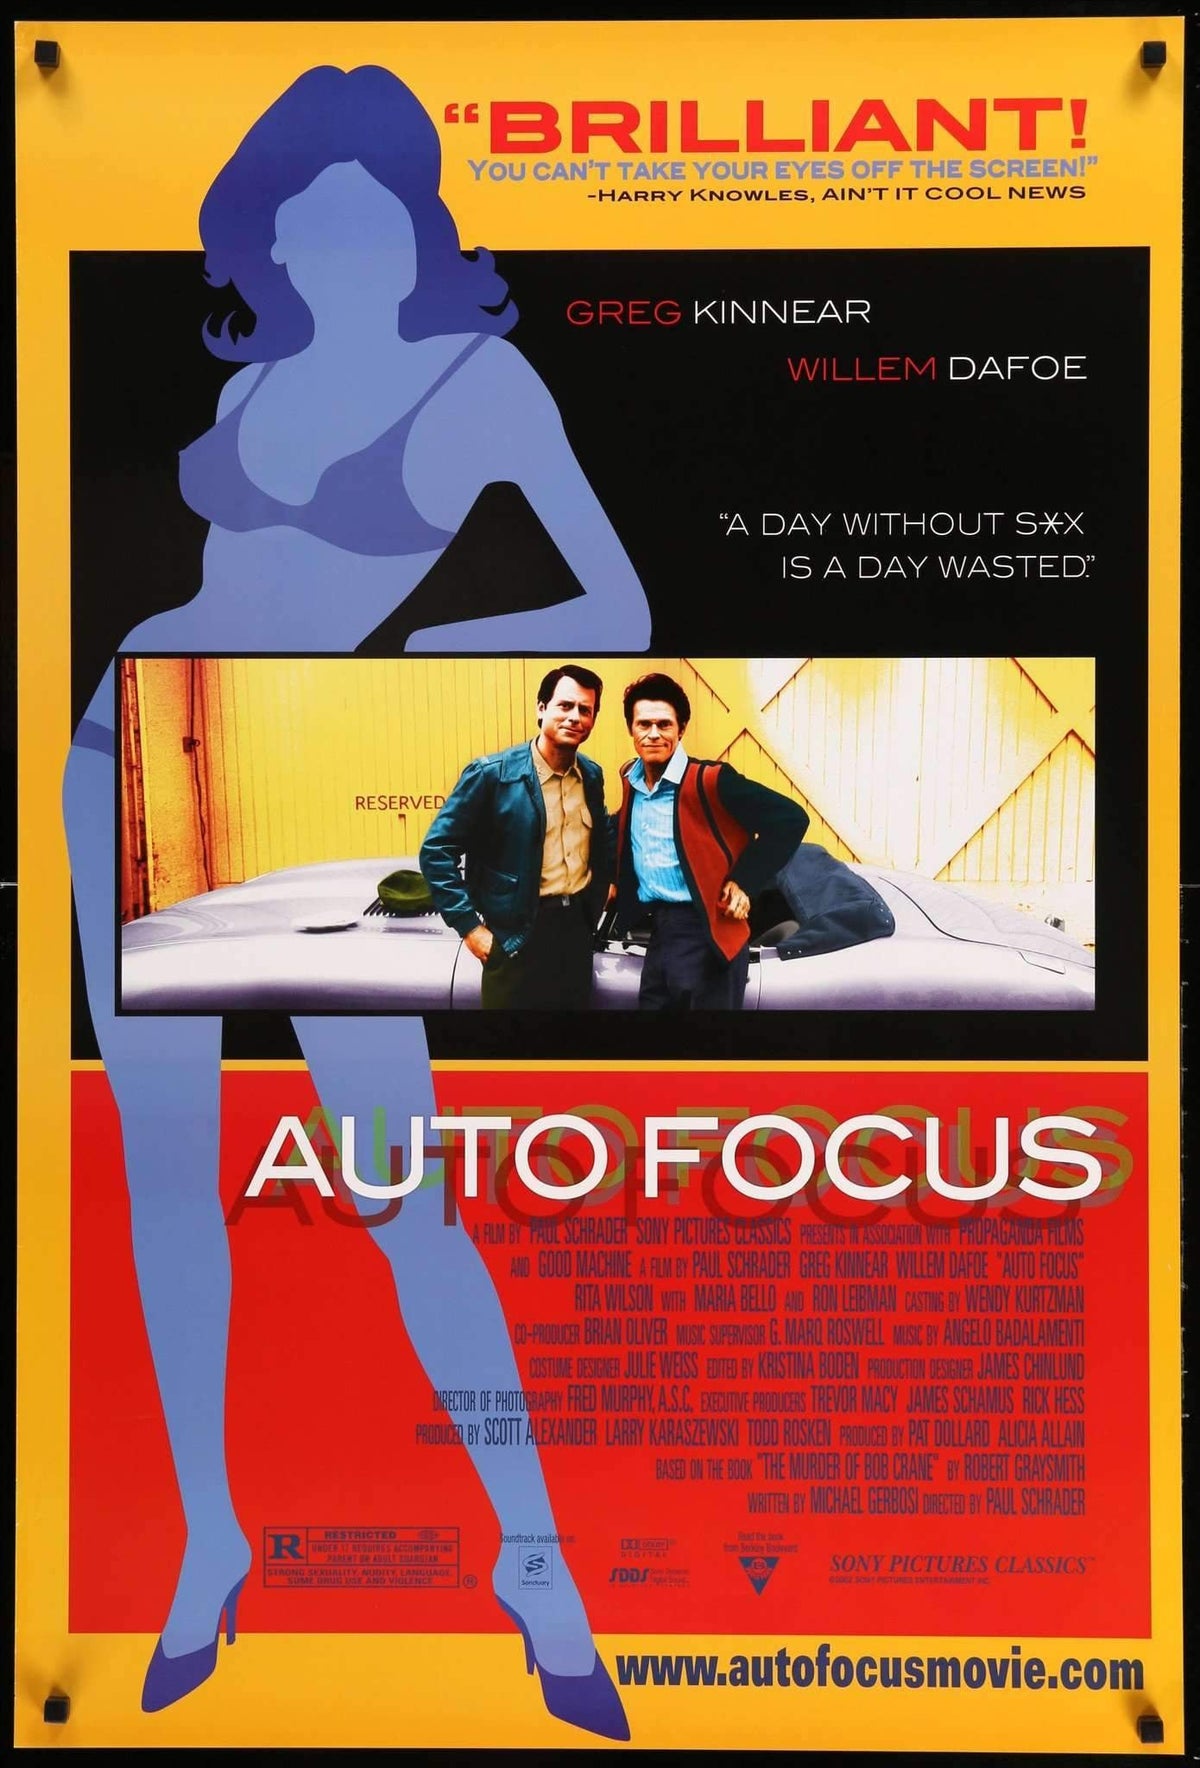 Auto Focus (2002) original movie poster for sale at Original Film Art